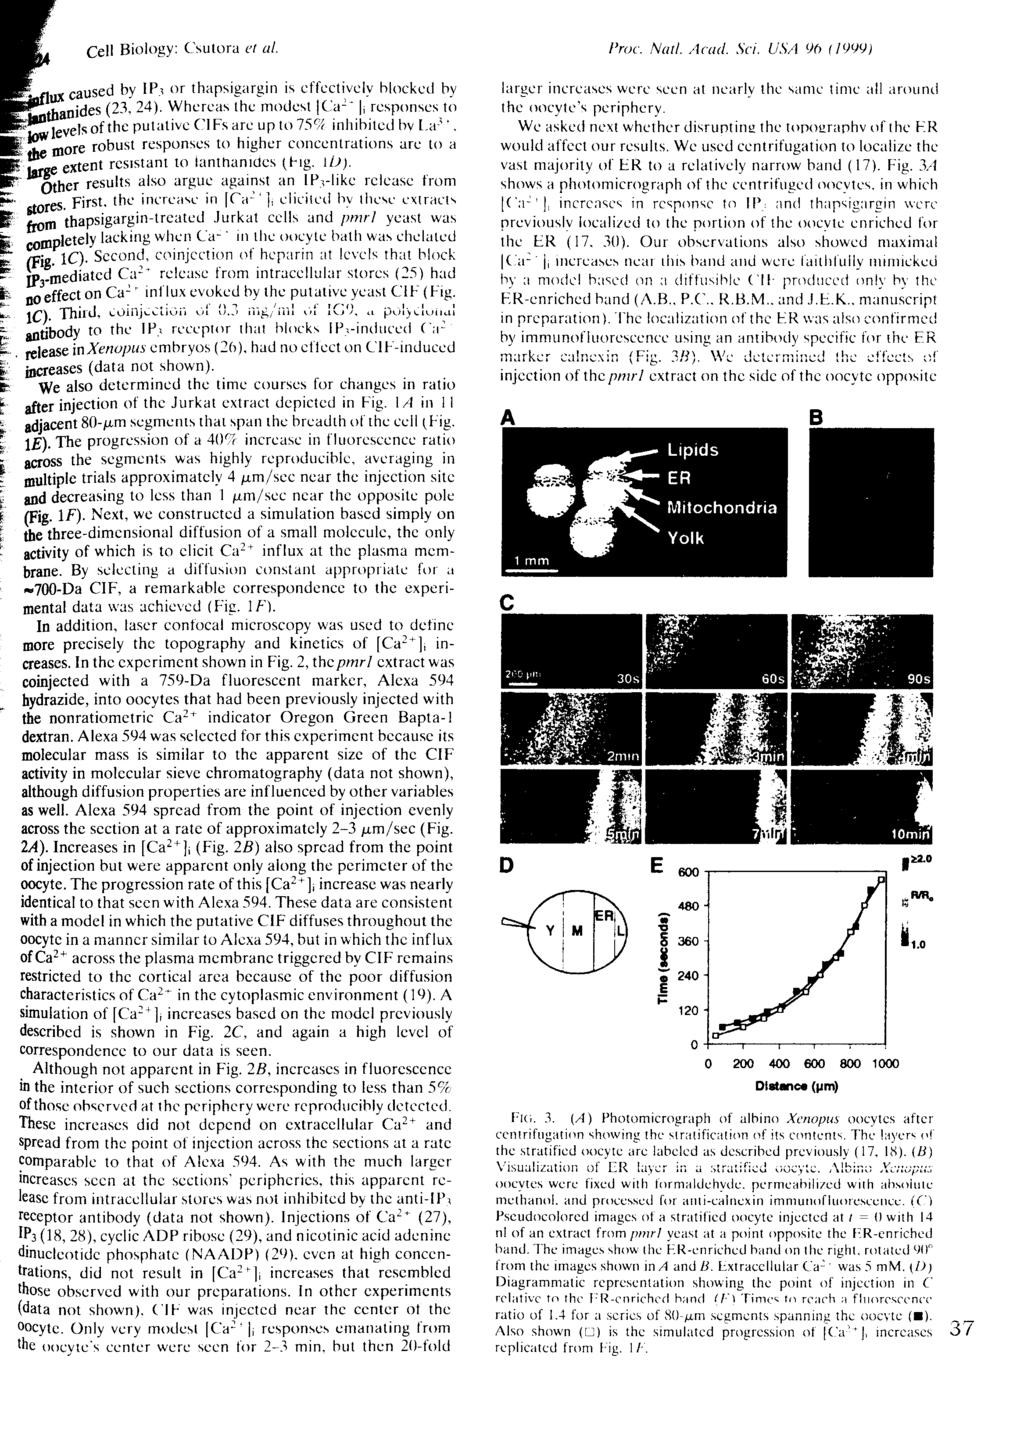 Proc. Natl. Acad. Sci. USA 90 (1999) pj^hanides (23. 24).